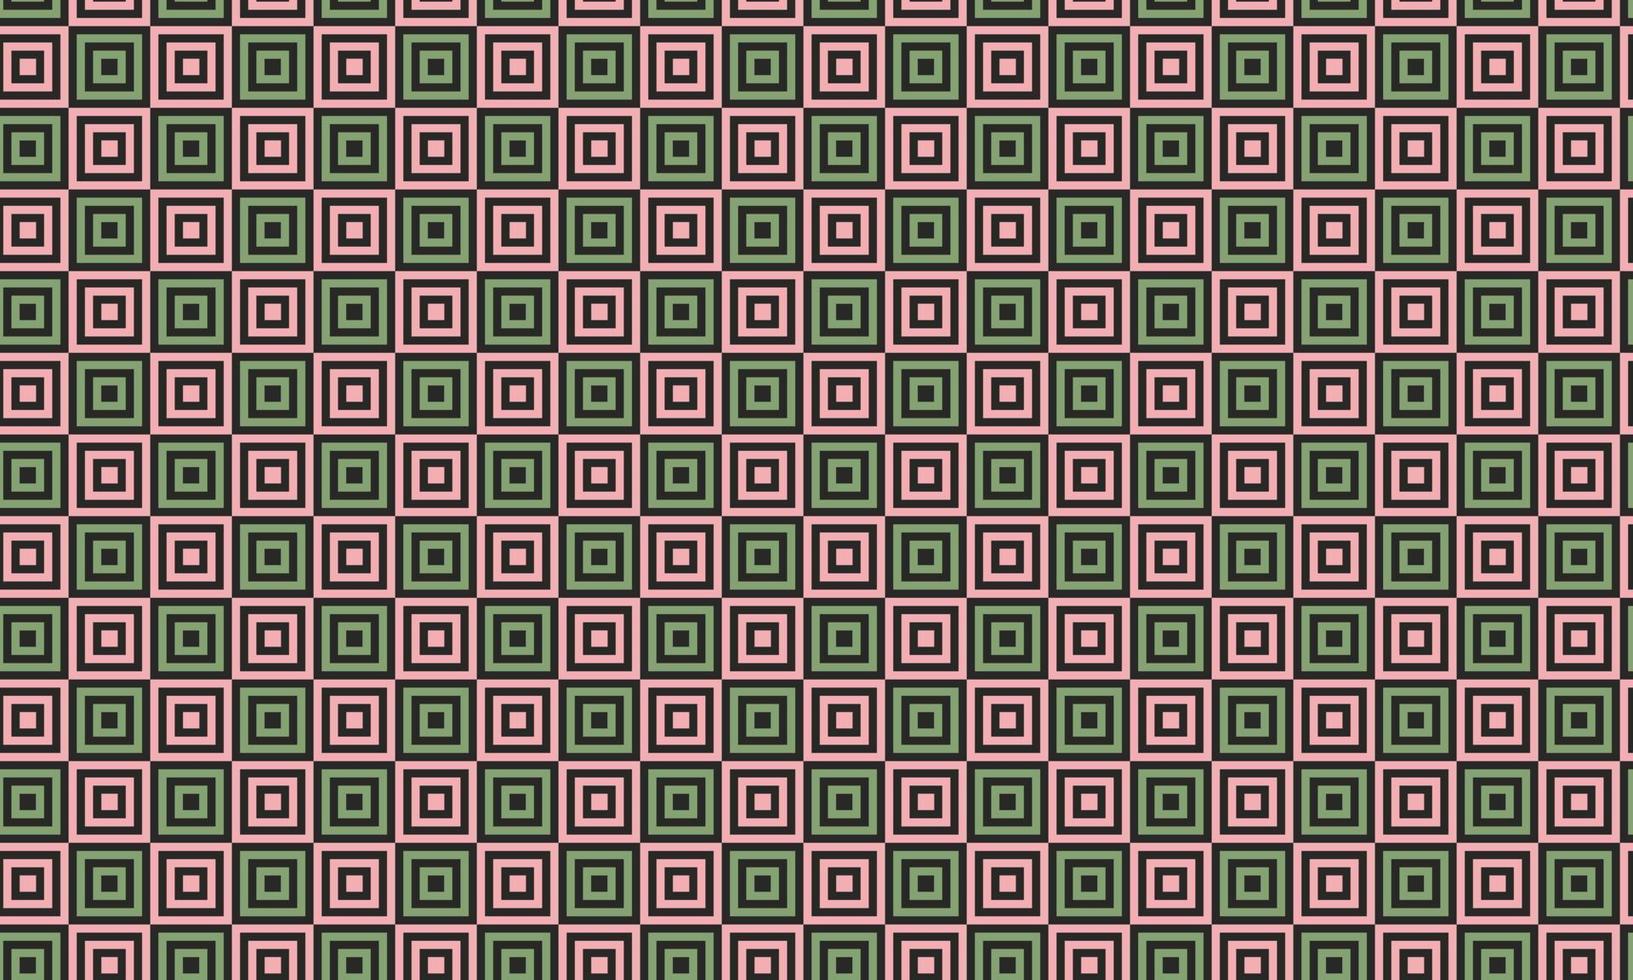 patrón geométrico abstracto sin costuras con cuadrados rosas y verdes sobre fondo negro. diseño de vector de línea de minimalismo simple de moda